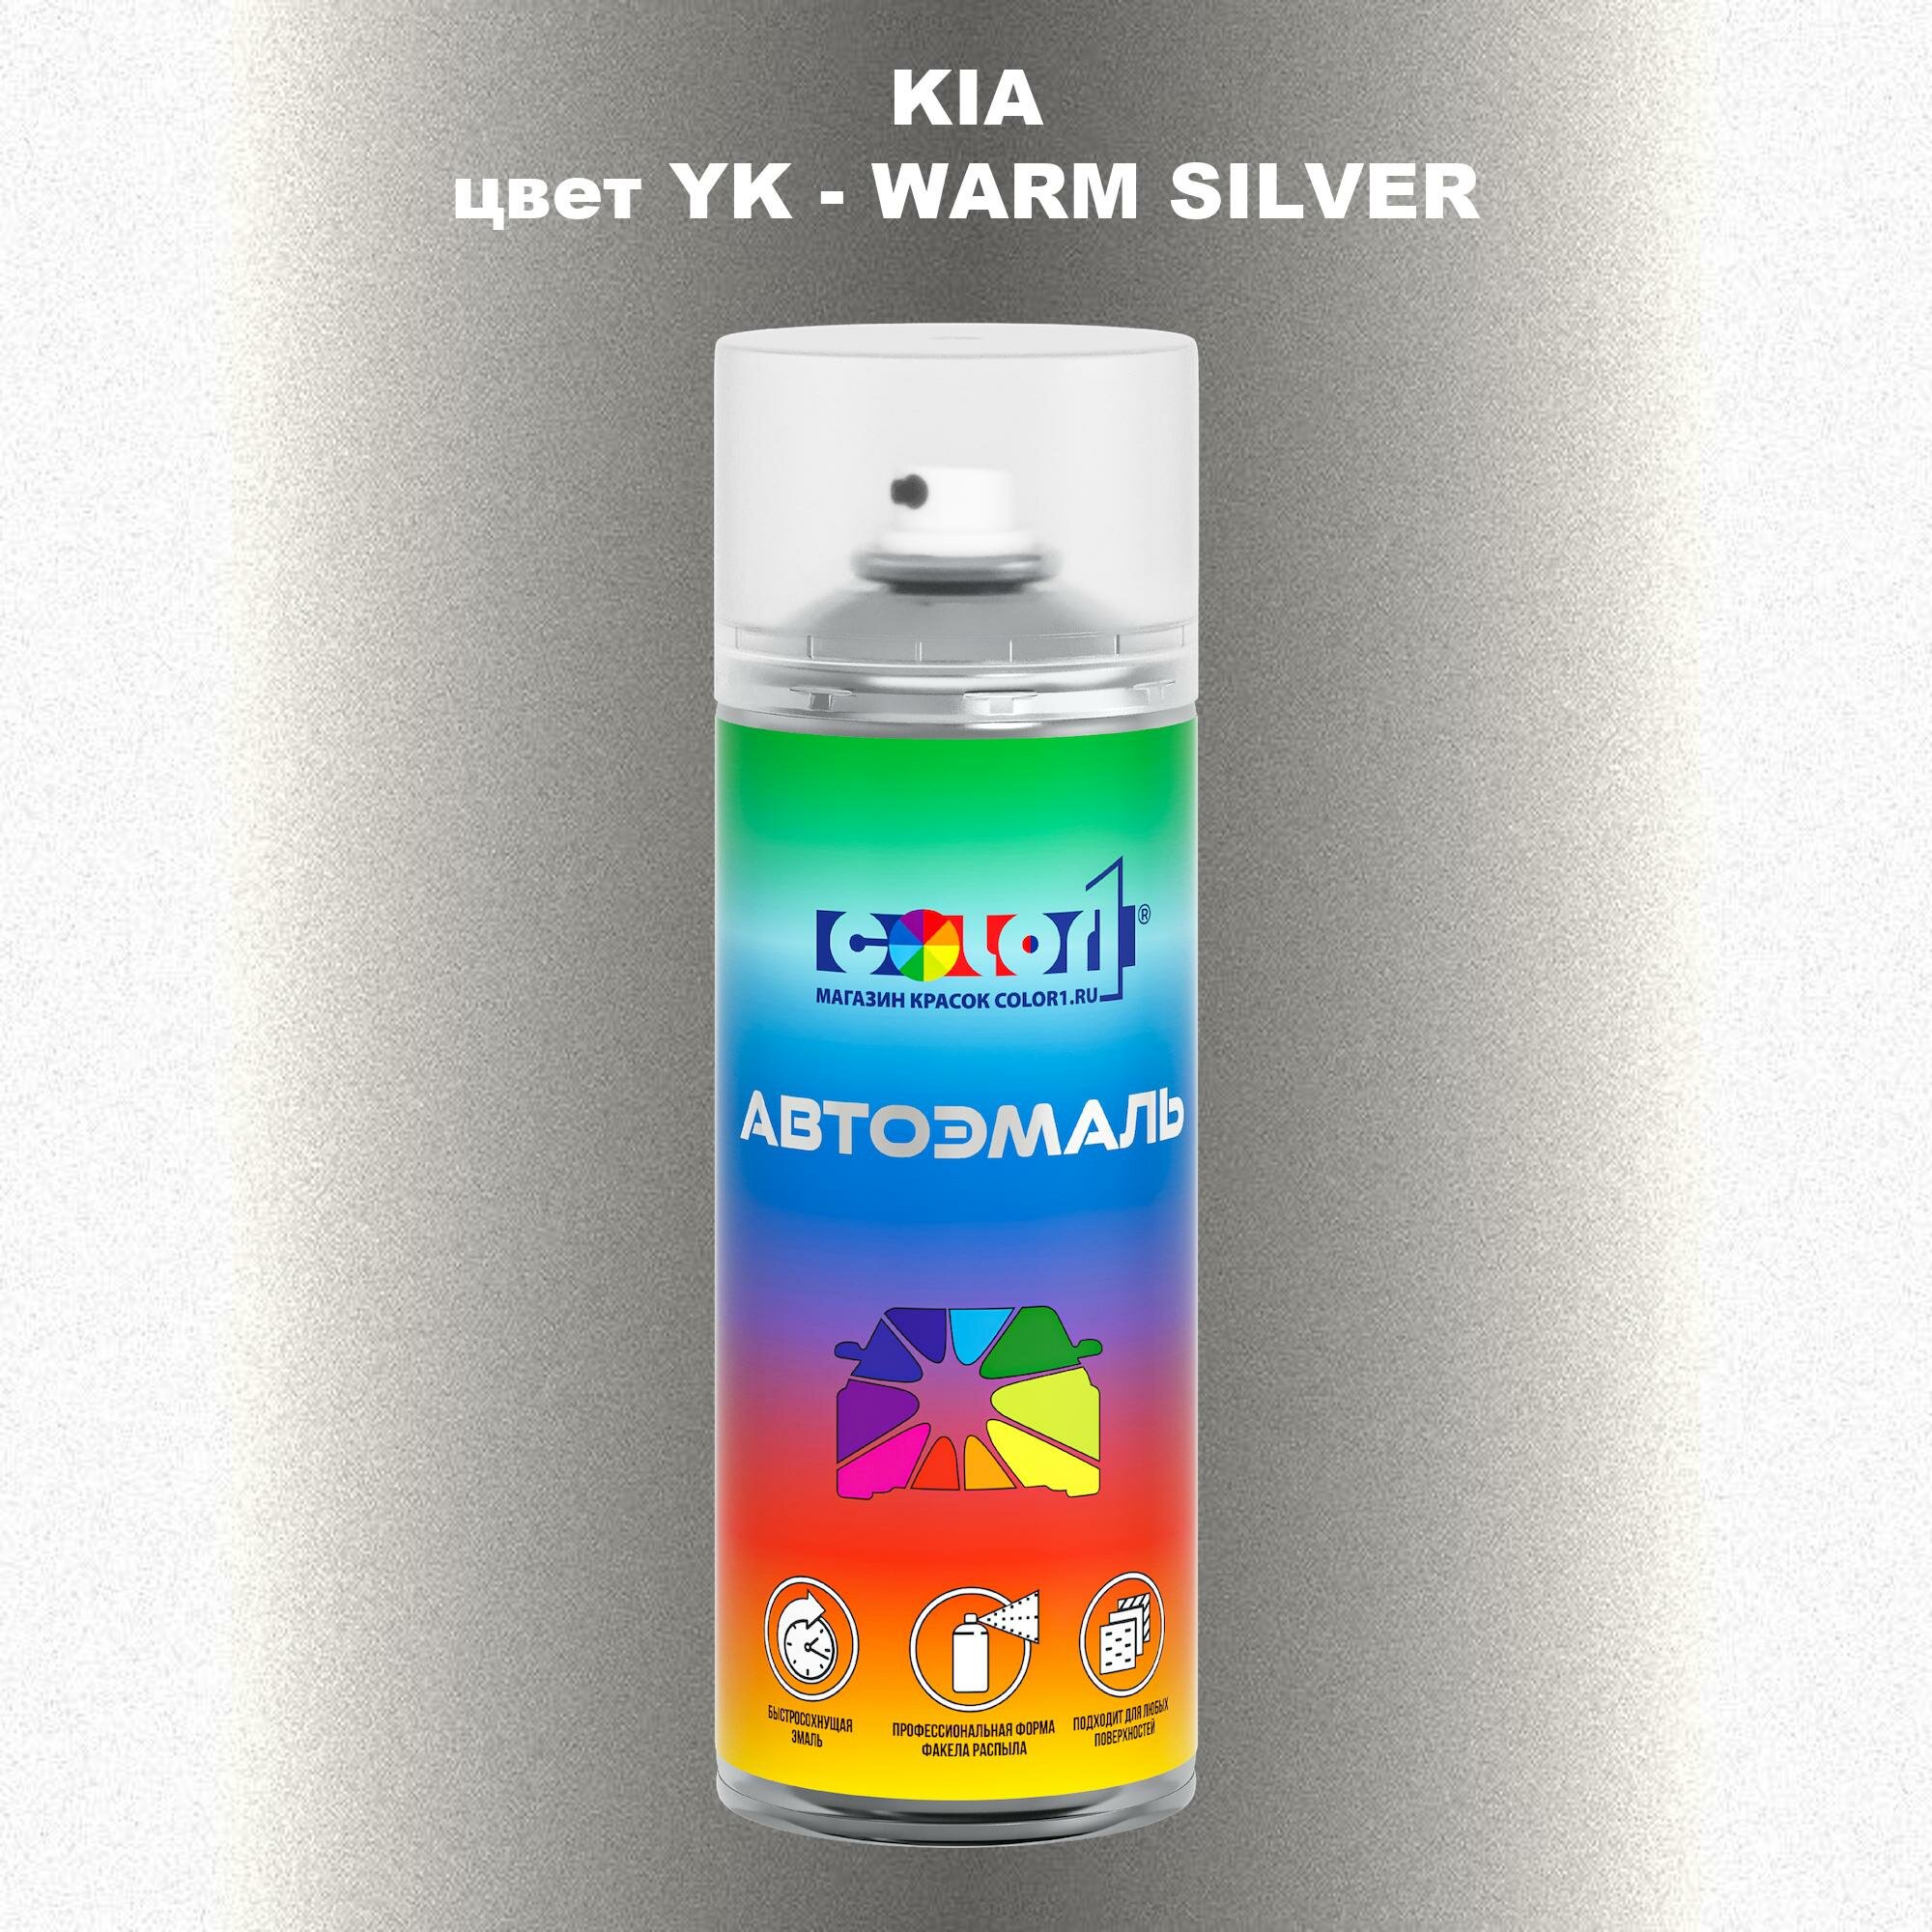 Аэрозольная краска COLOR1 для KIA, цвет YK - WARM SILVER